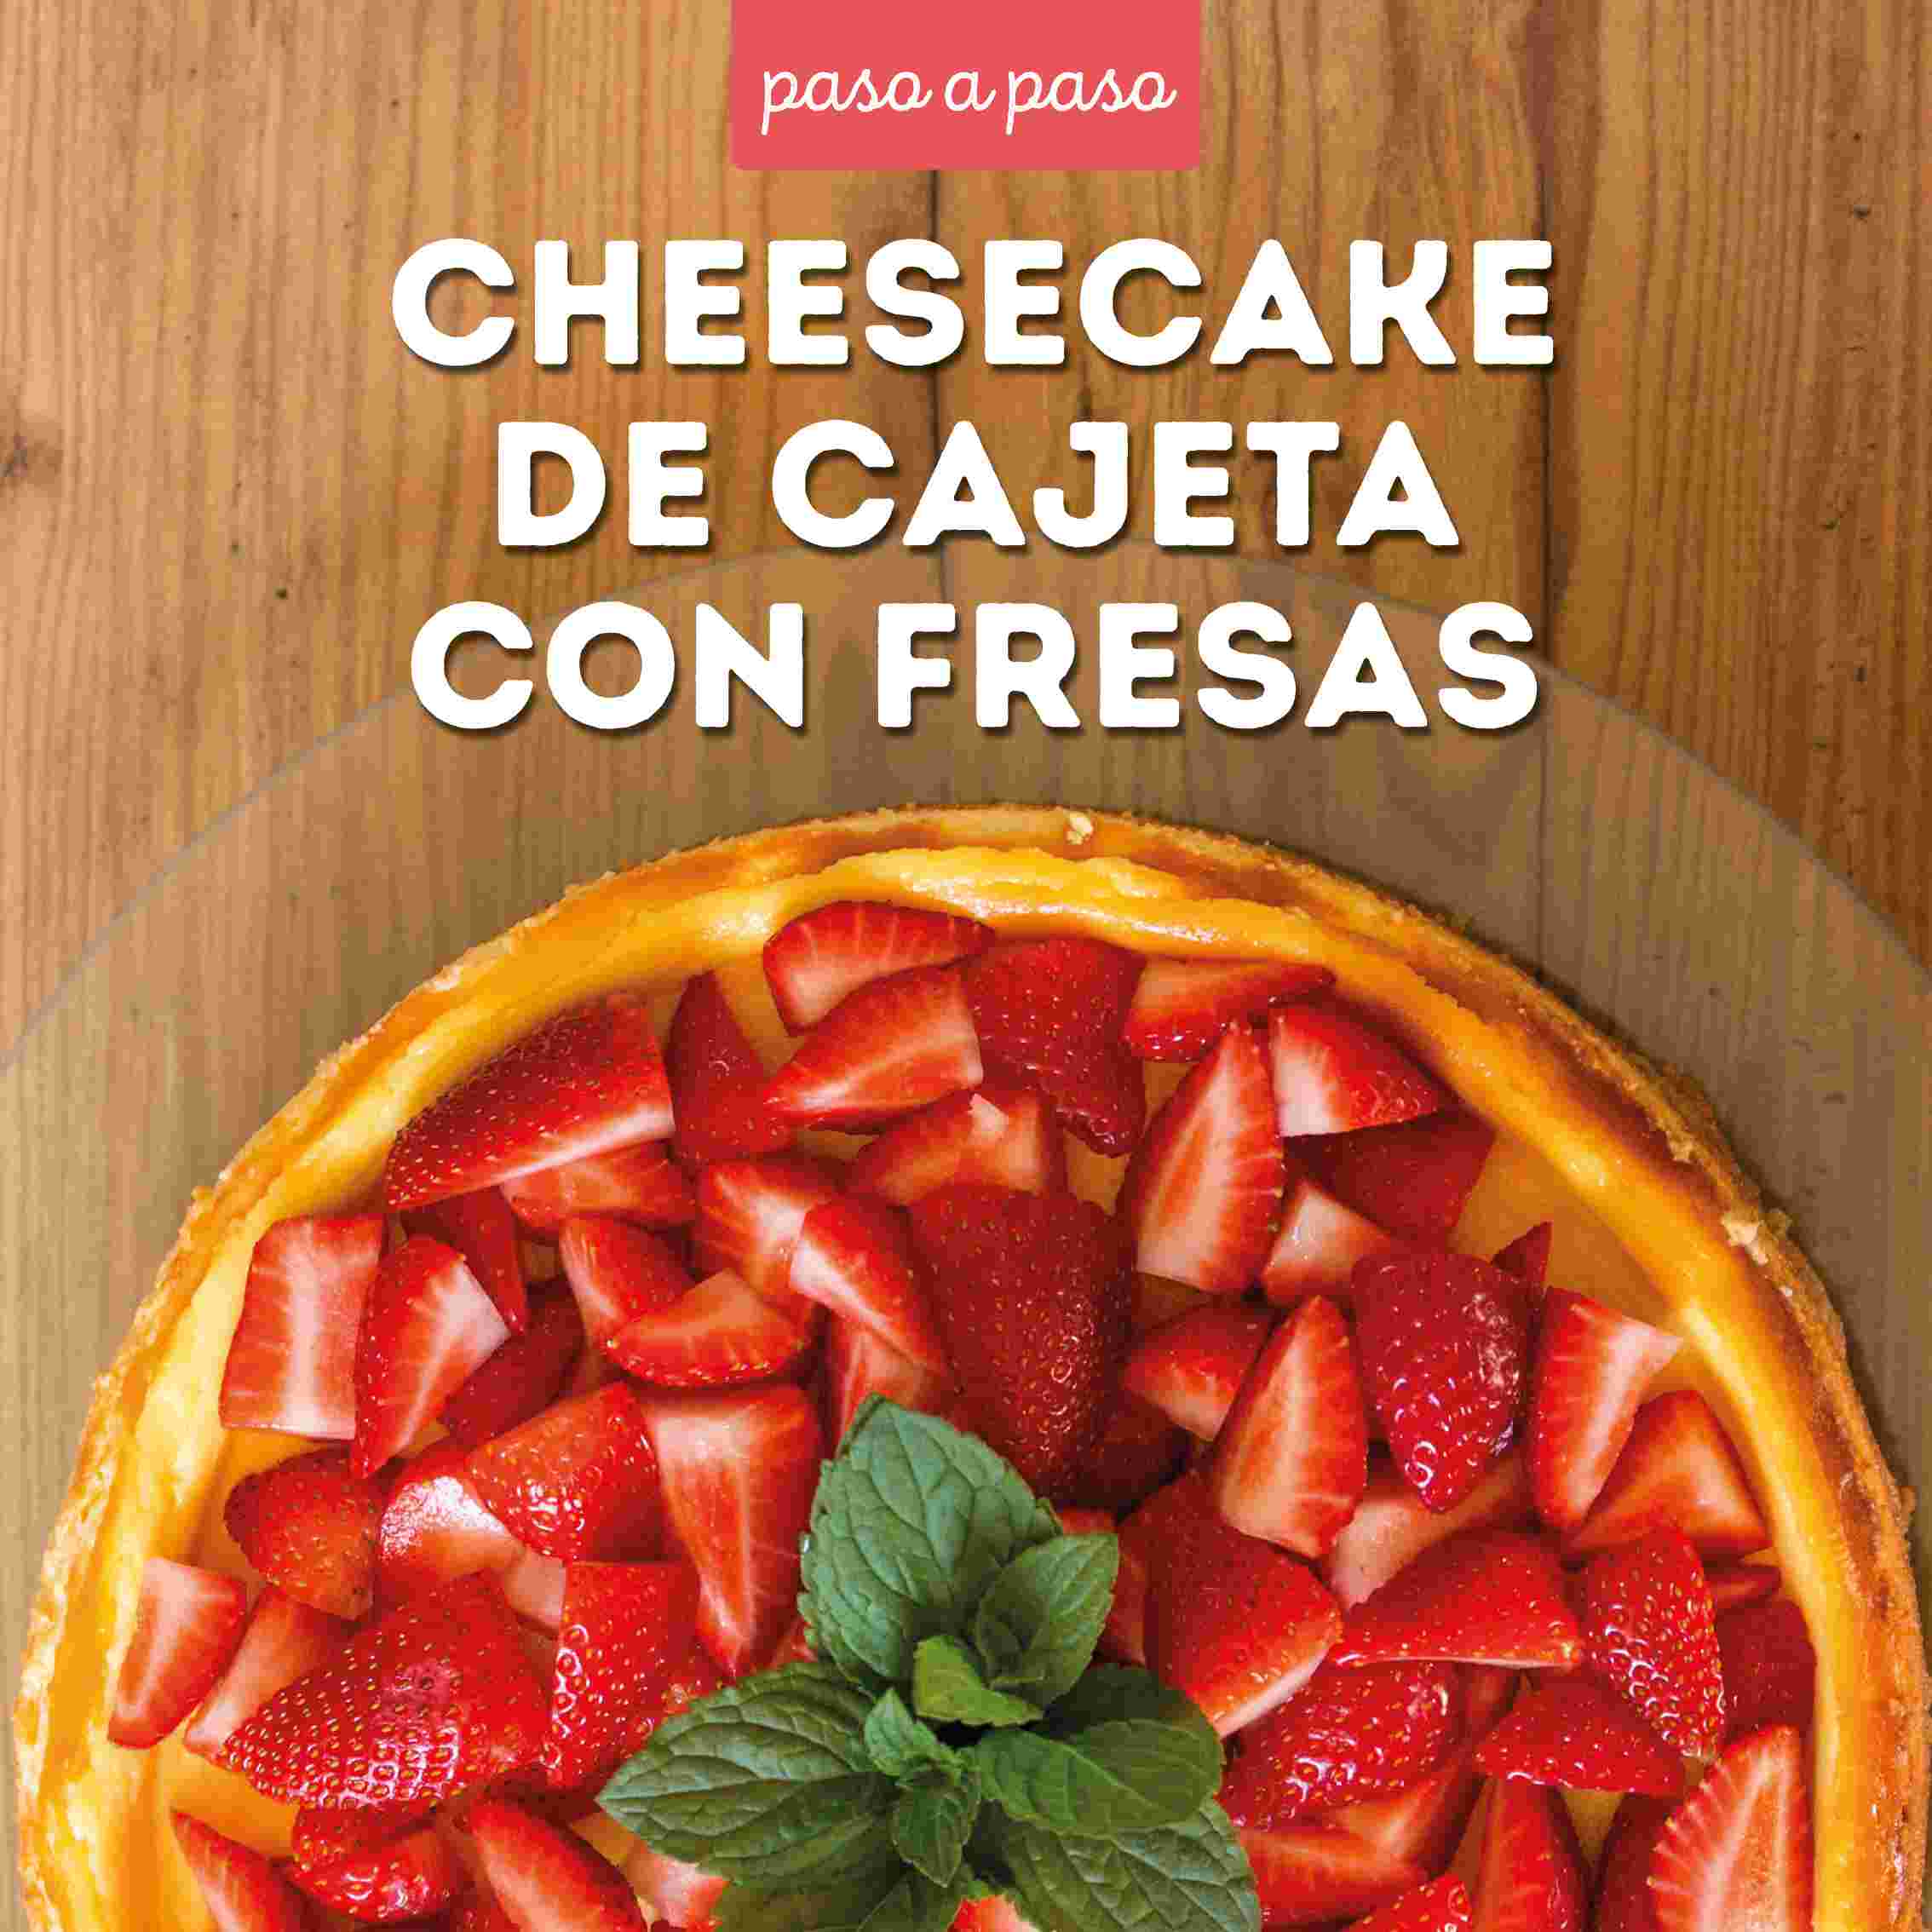 Receta cheesecake de cajeta con fresas